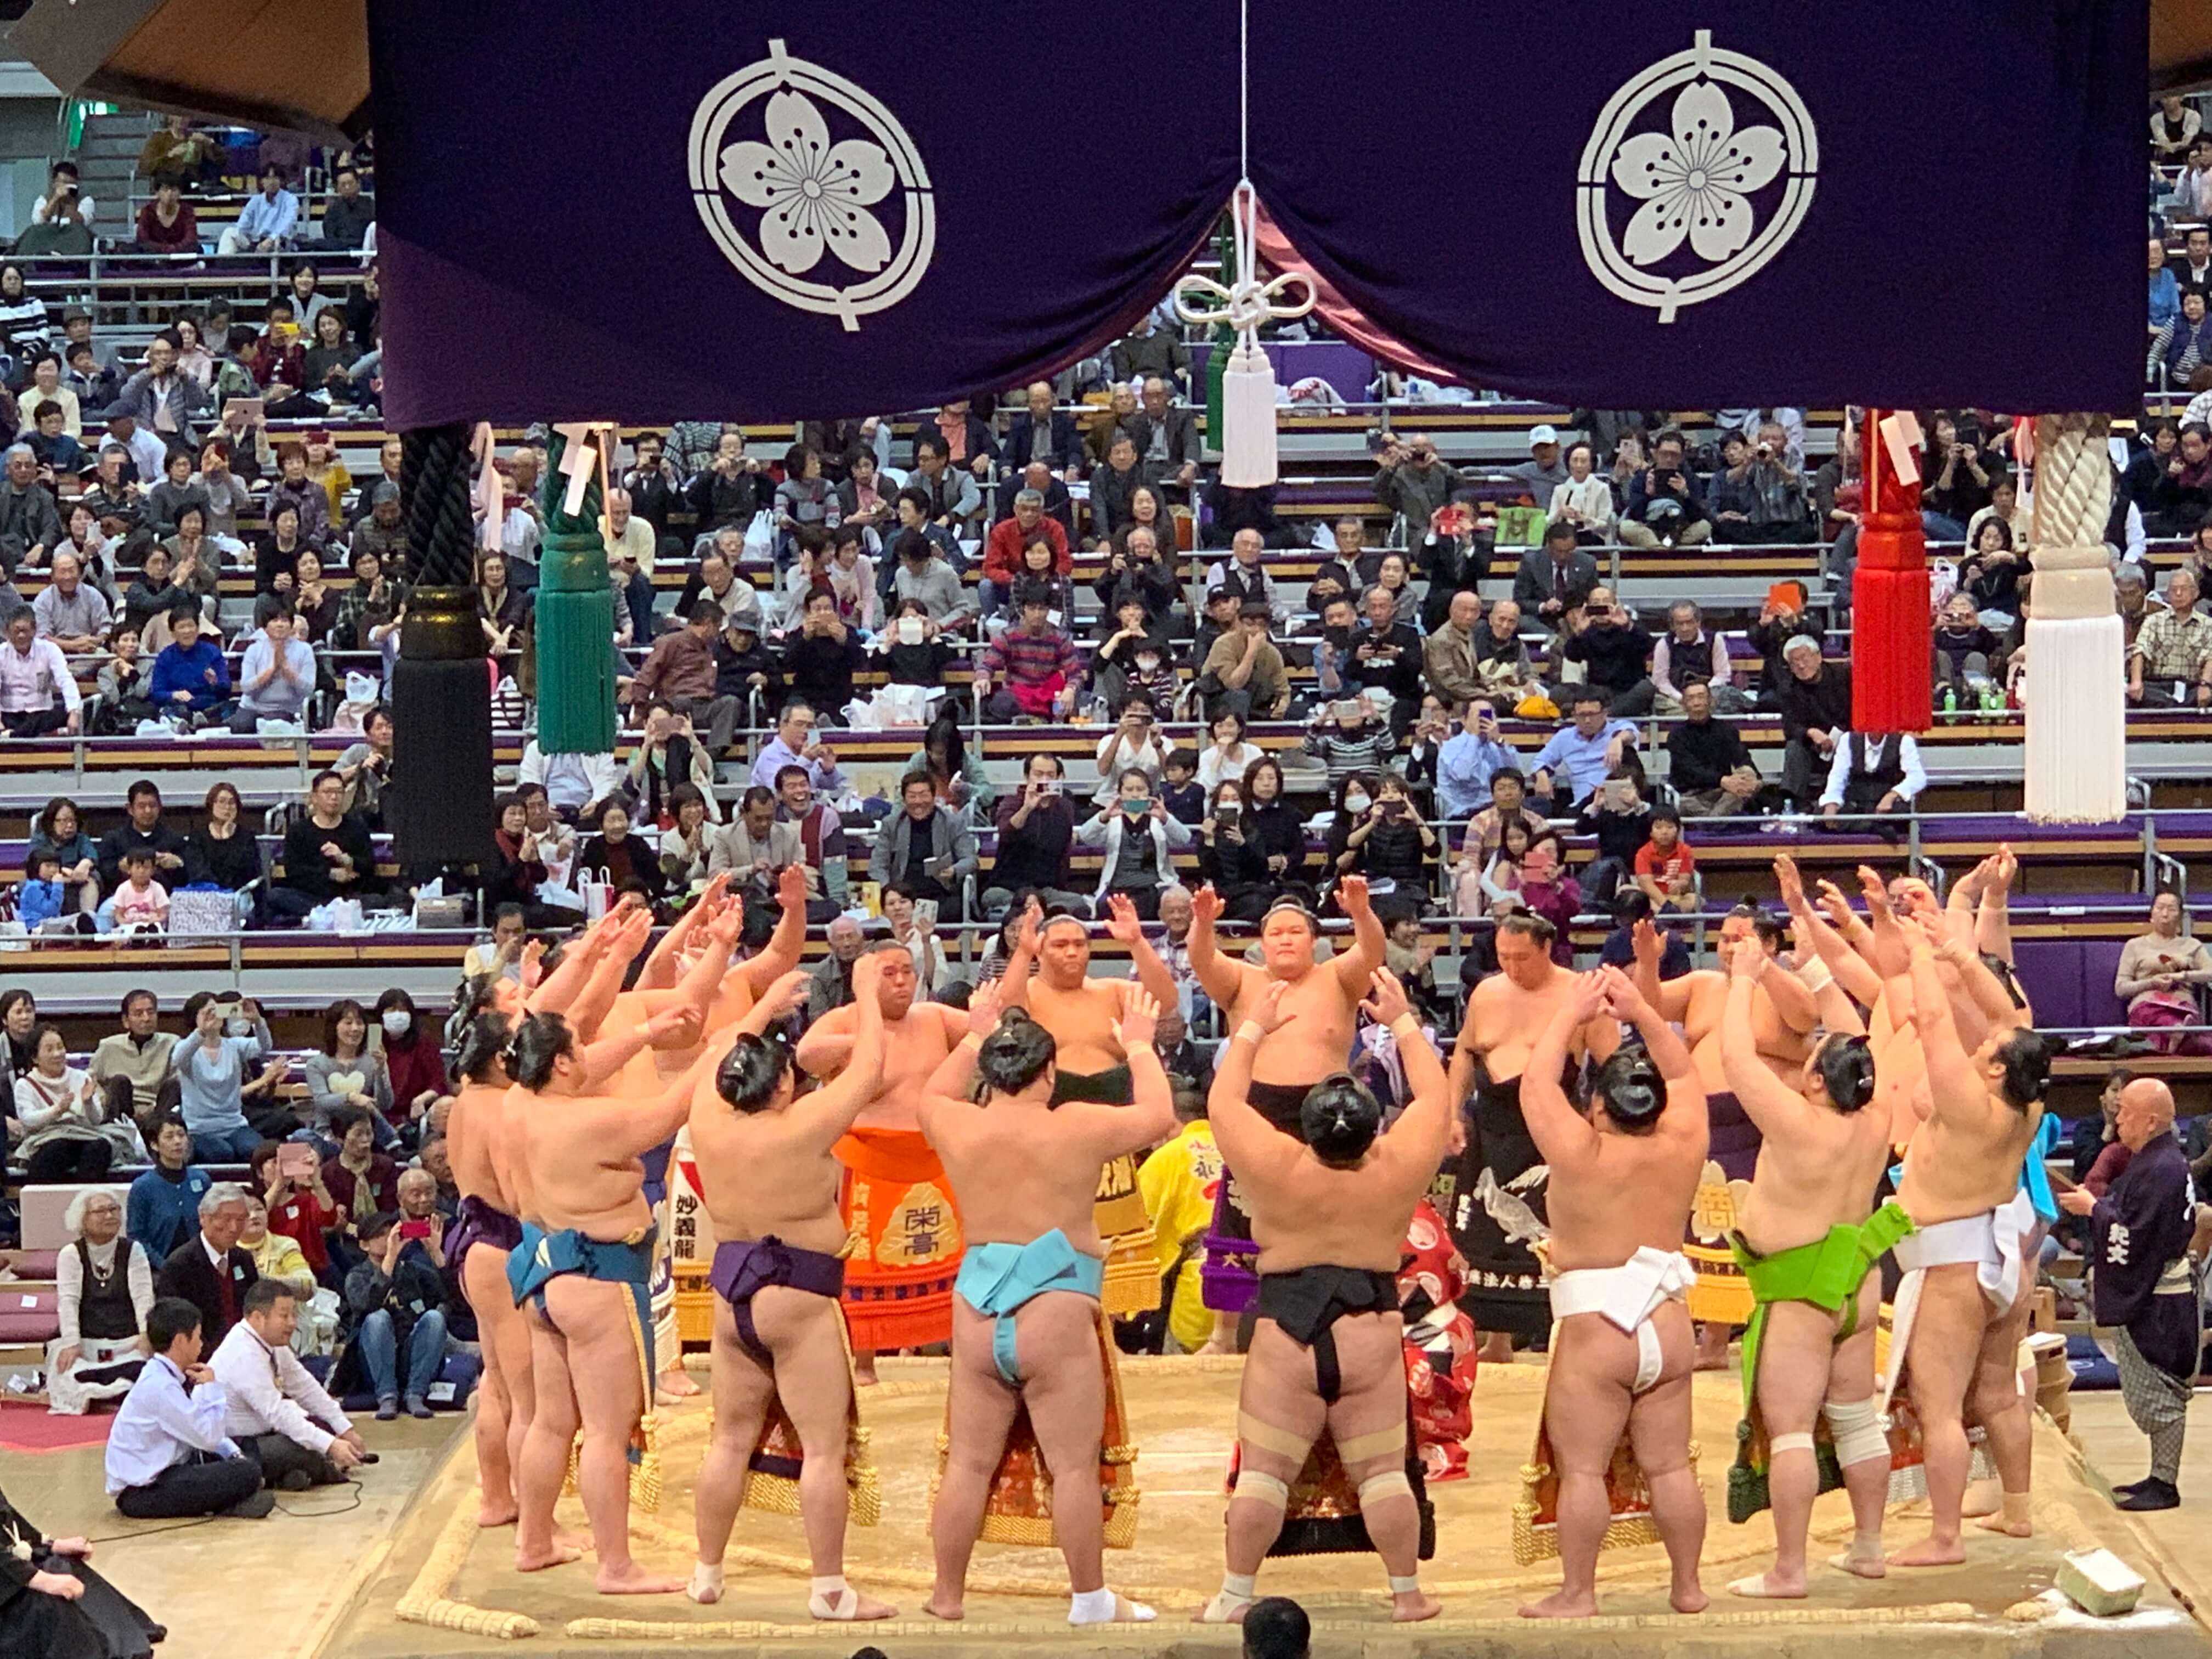 大相撲九州場所2019 チケットと座席の種類、開催日程について。大相撲